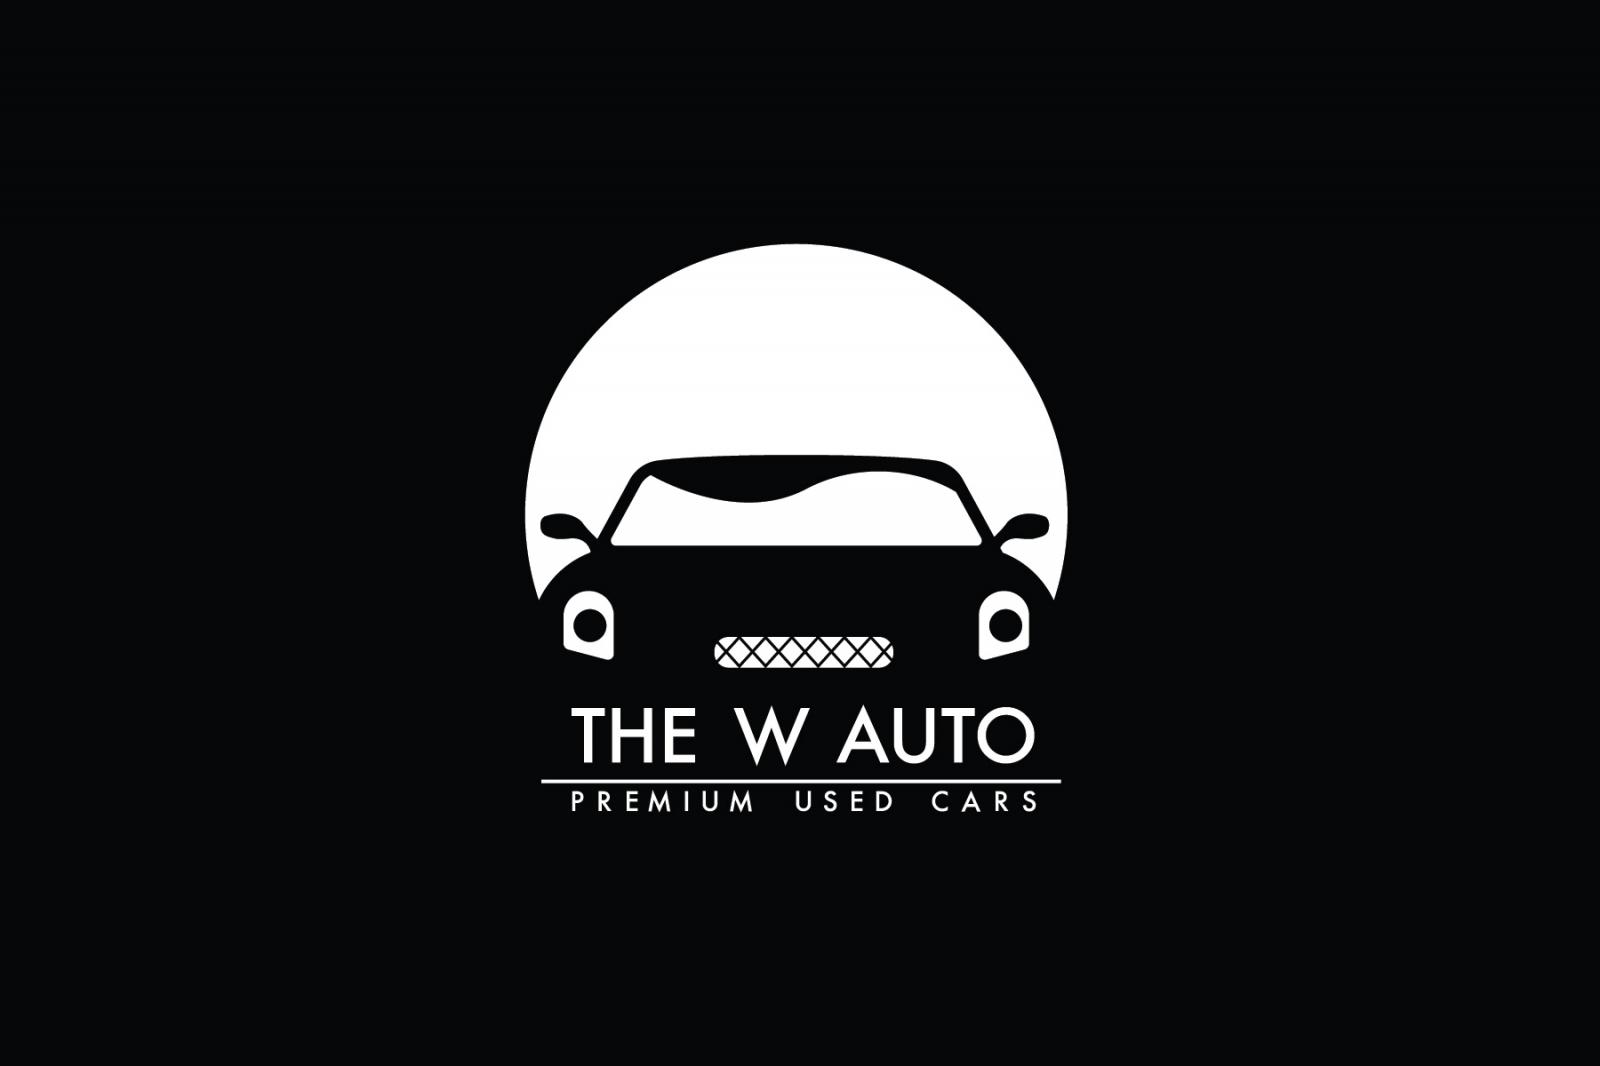 The W Auto